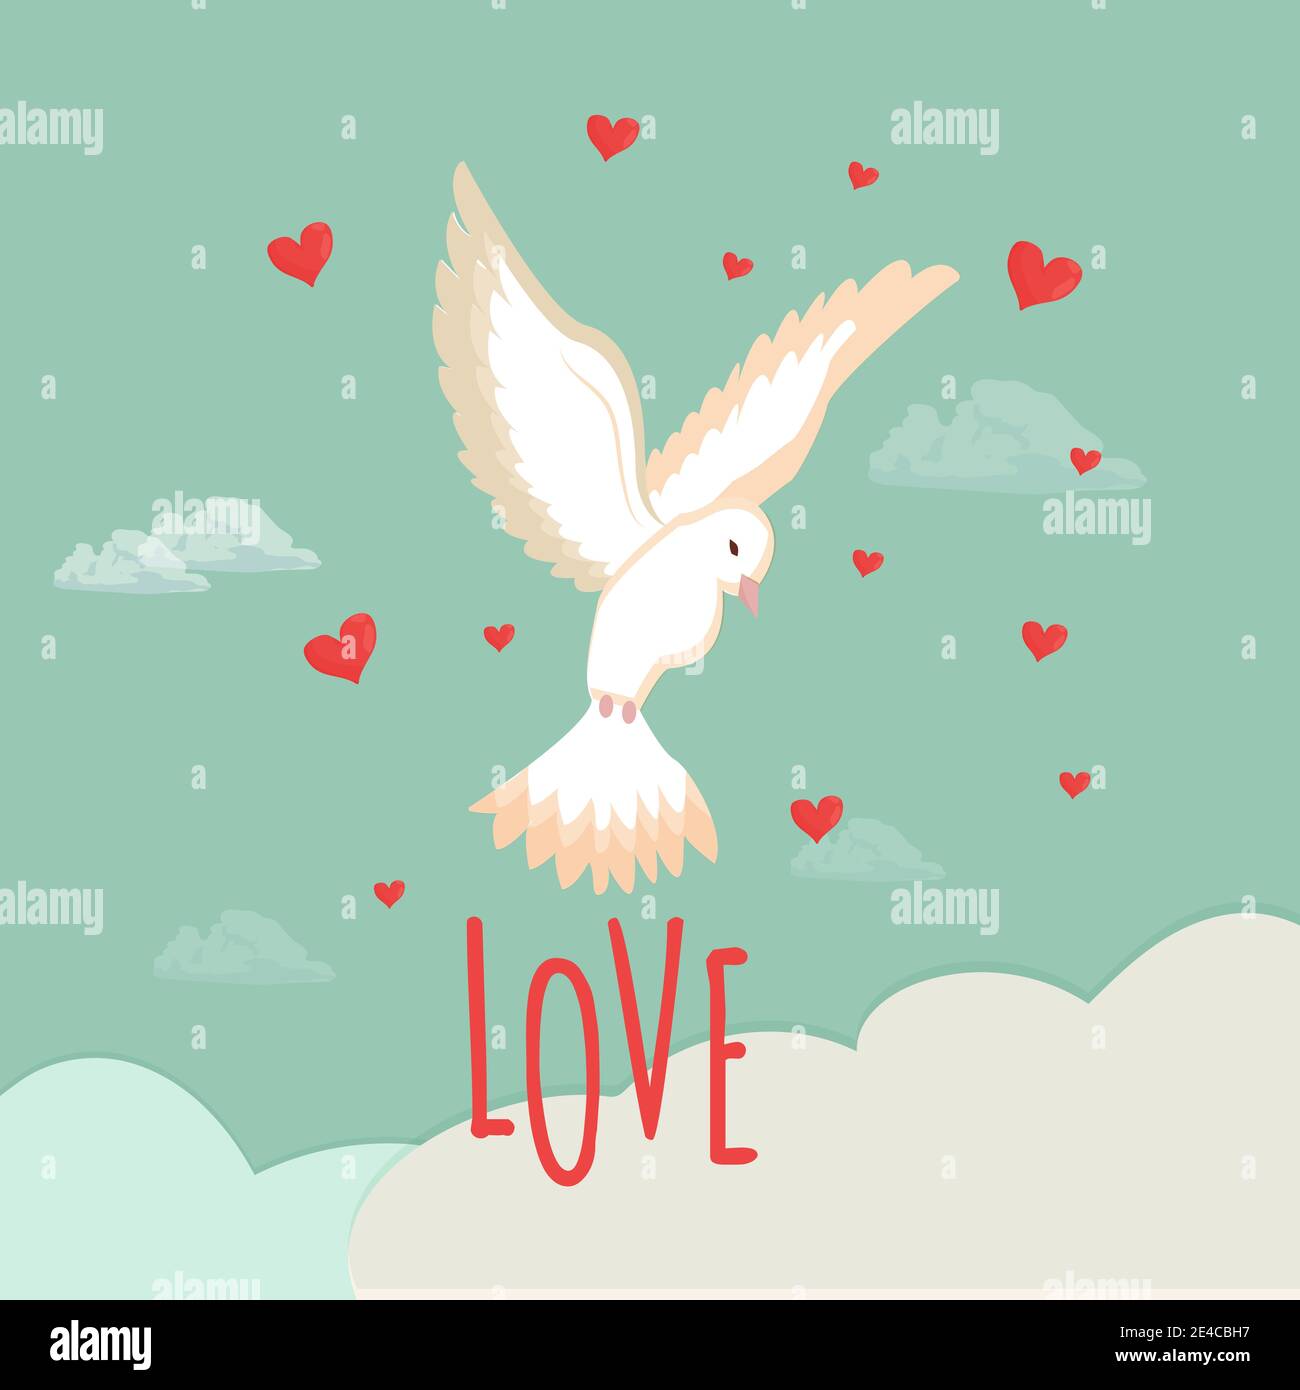 Saludo con la paloma blanca del día de San Valentín, paloma en el cielo con nubes y corazones. Cartel, banner en colores brillantes. Texto Amor. Ilustración vectorial Ilustración del Vector